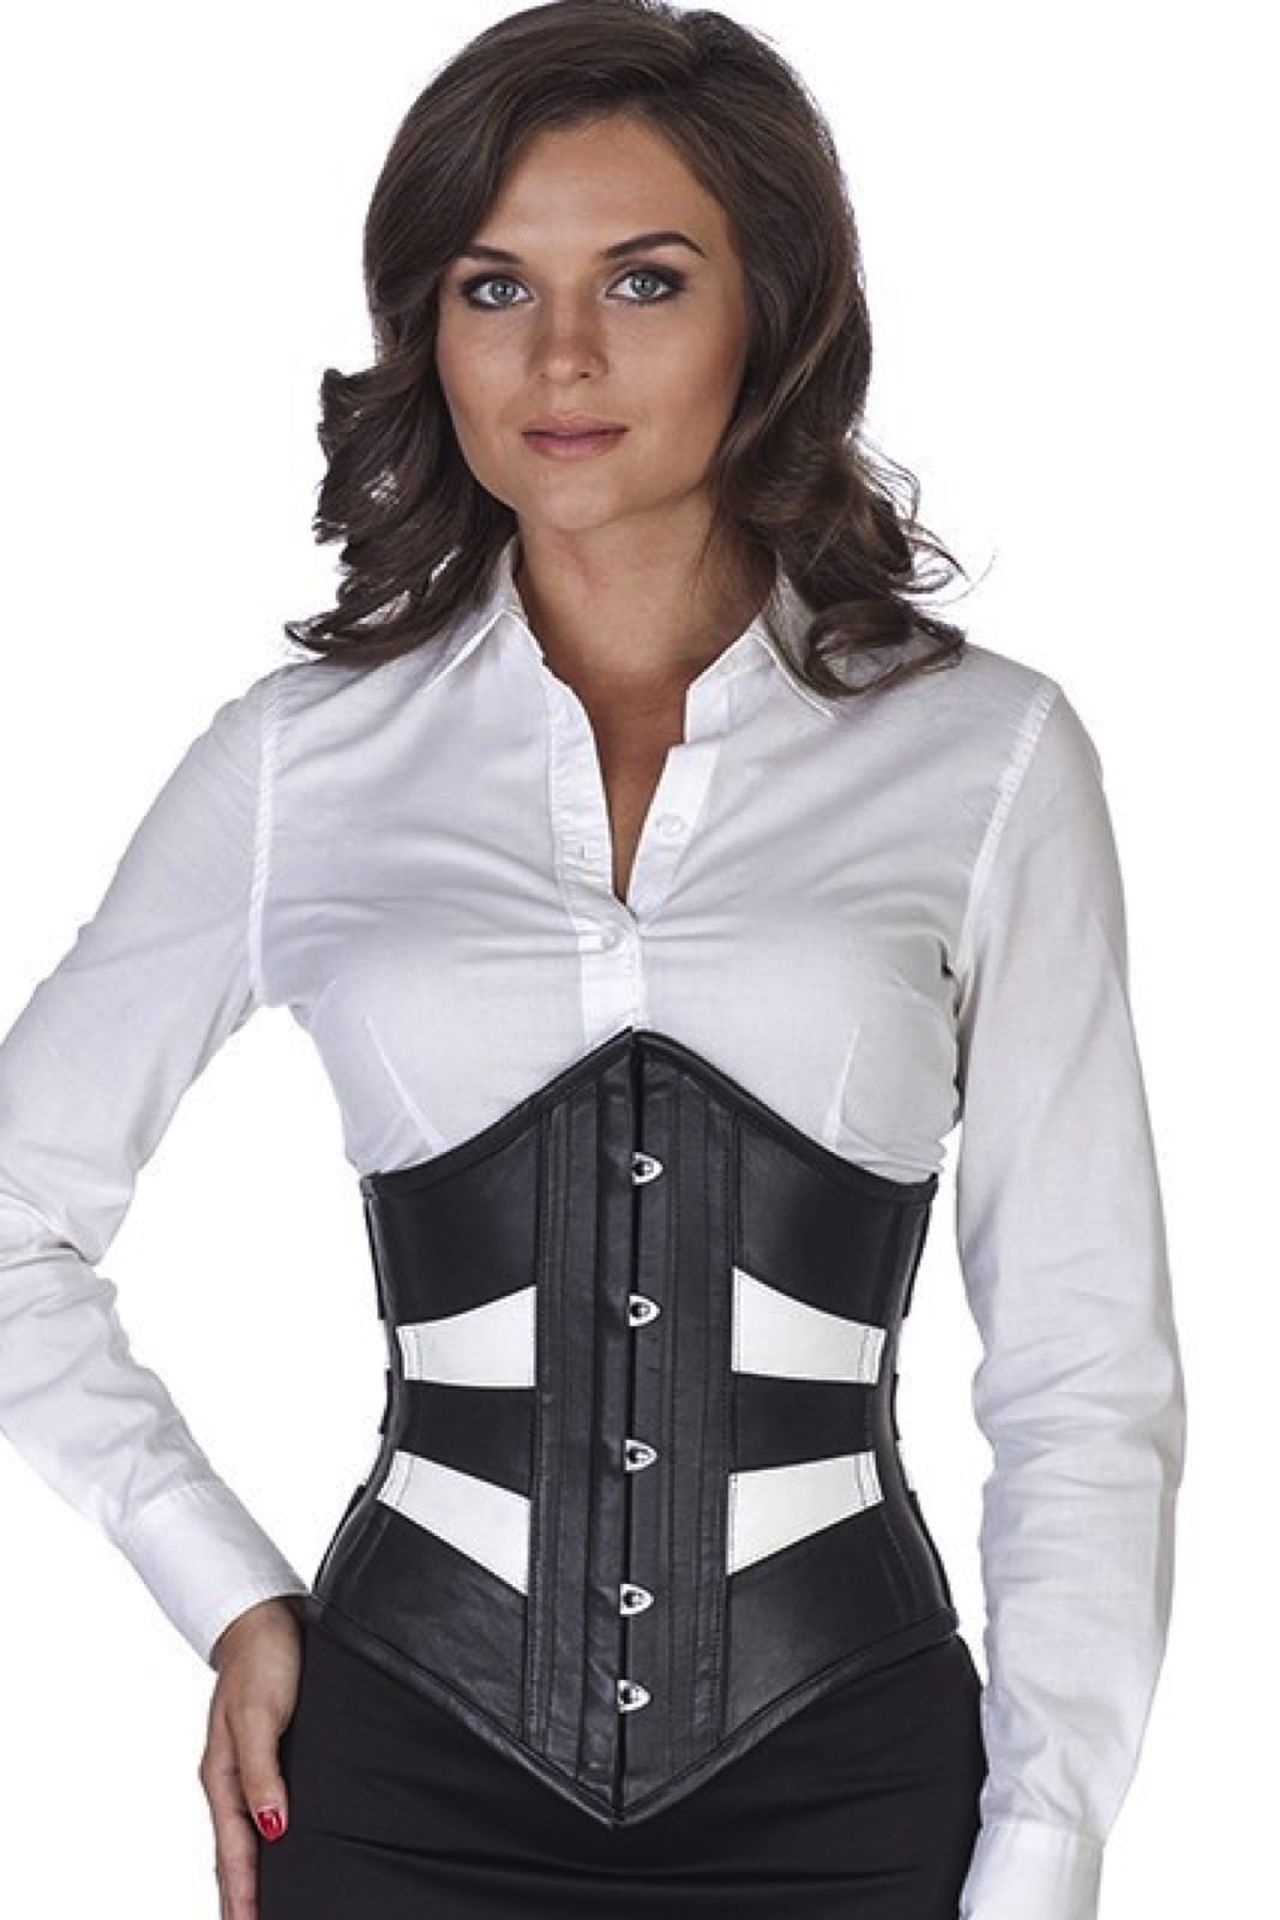 Leren corset zwart wit onderborst tweekleurig Korset ld35